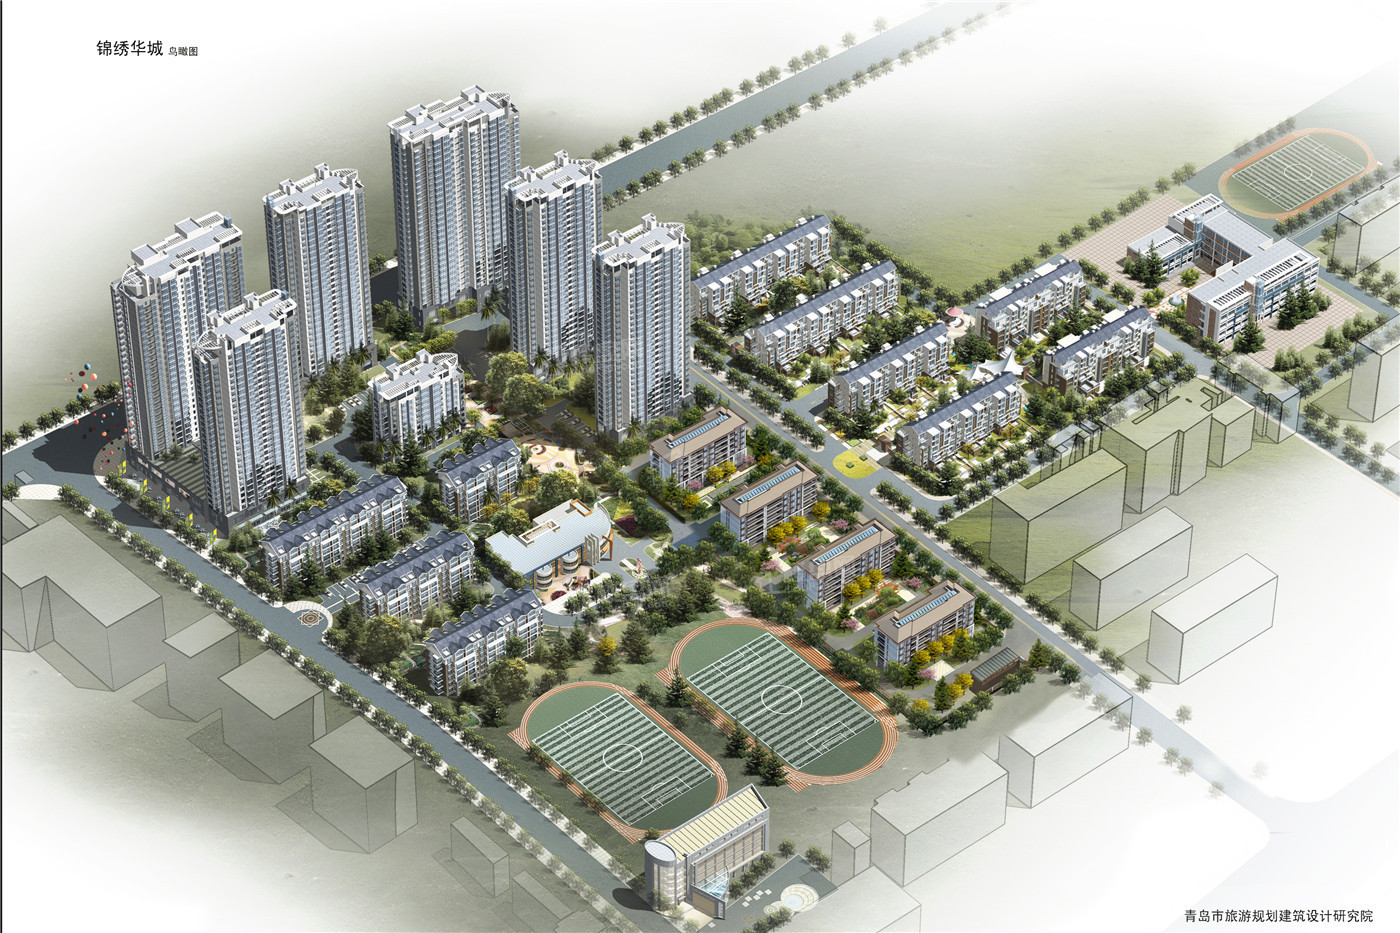 锦绣华城·世家入住时间已确定 项目预计2024年下半年交房